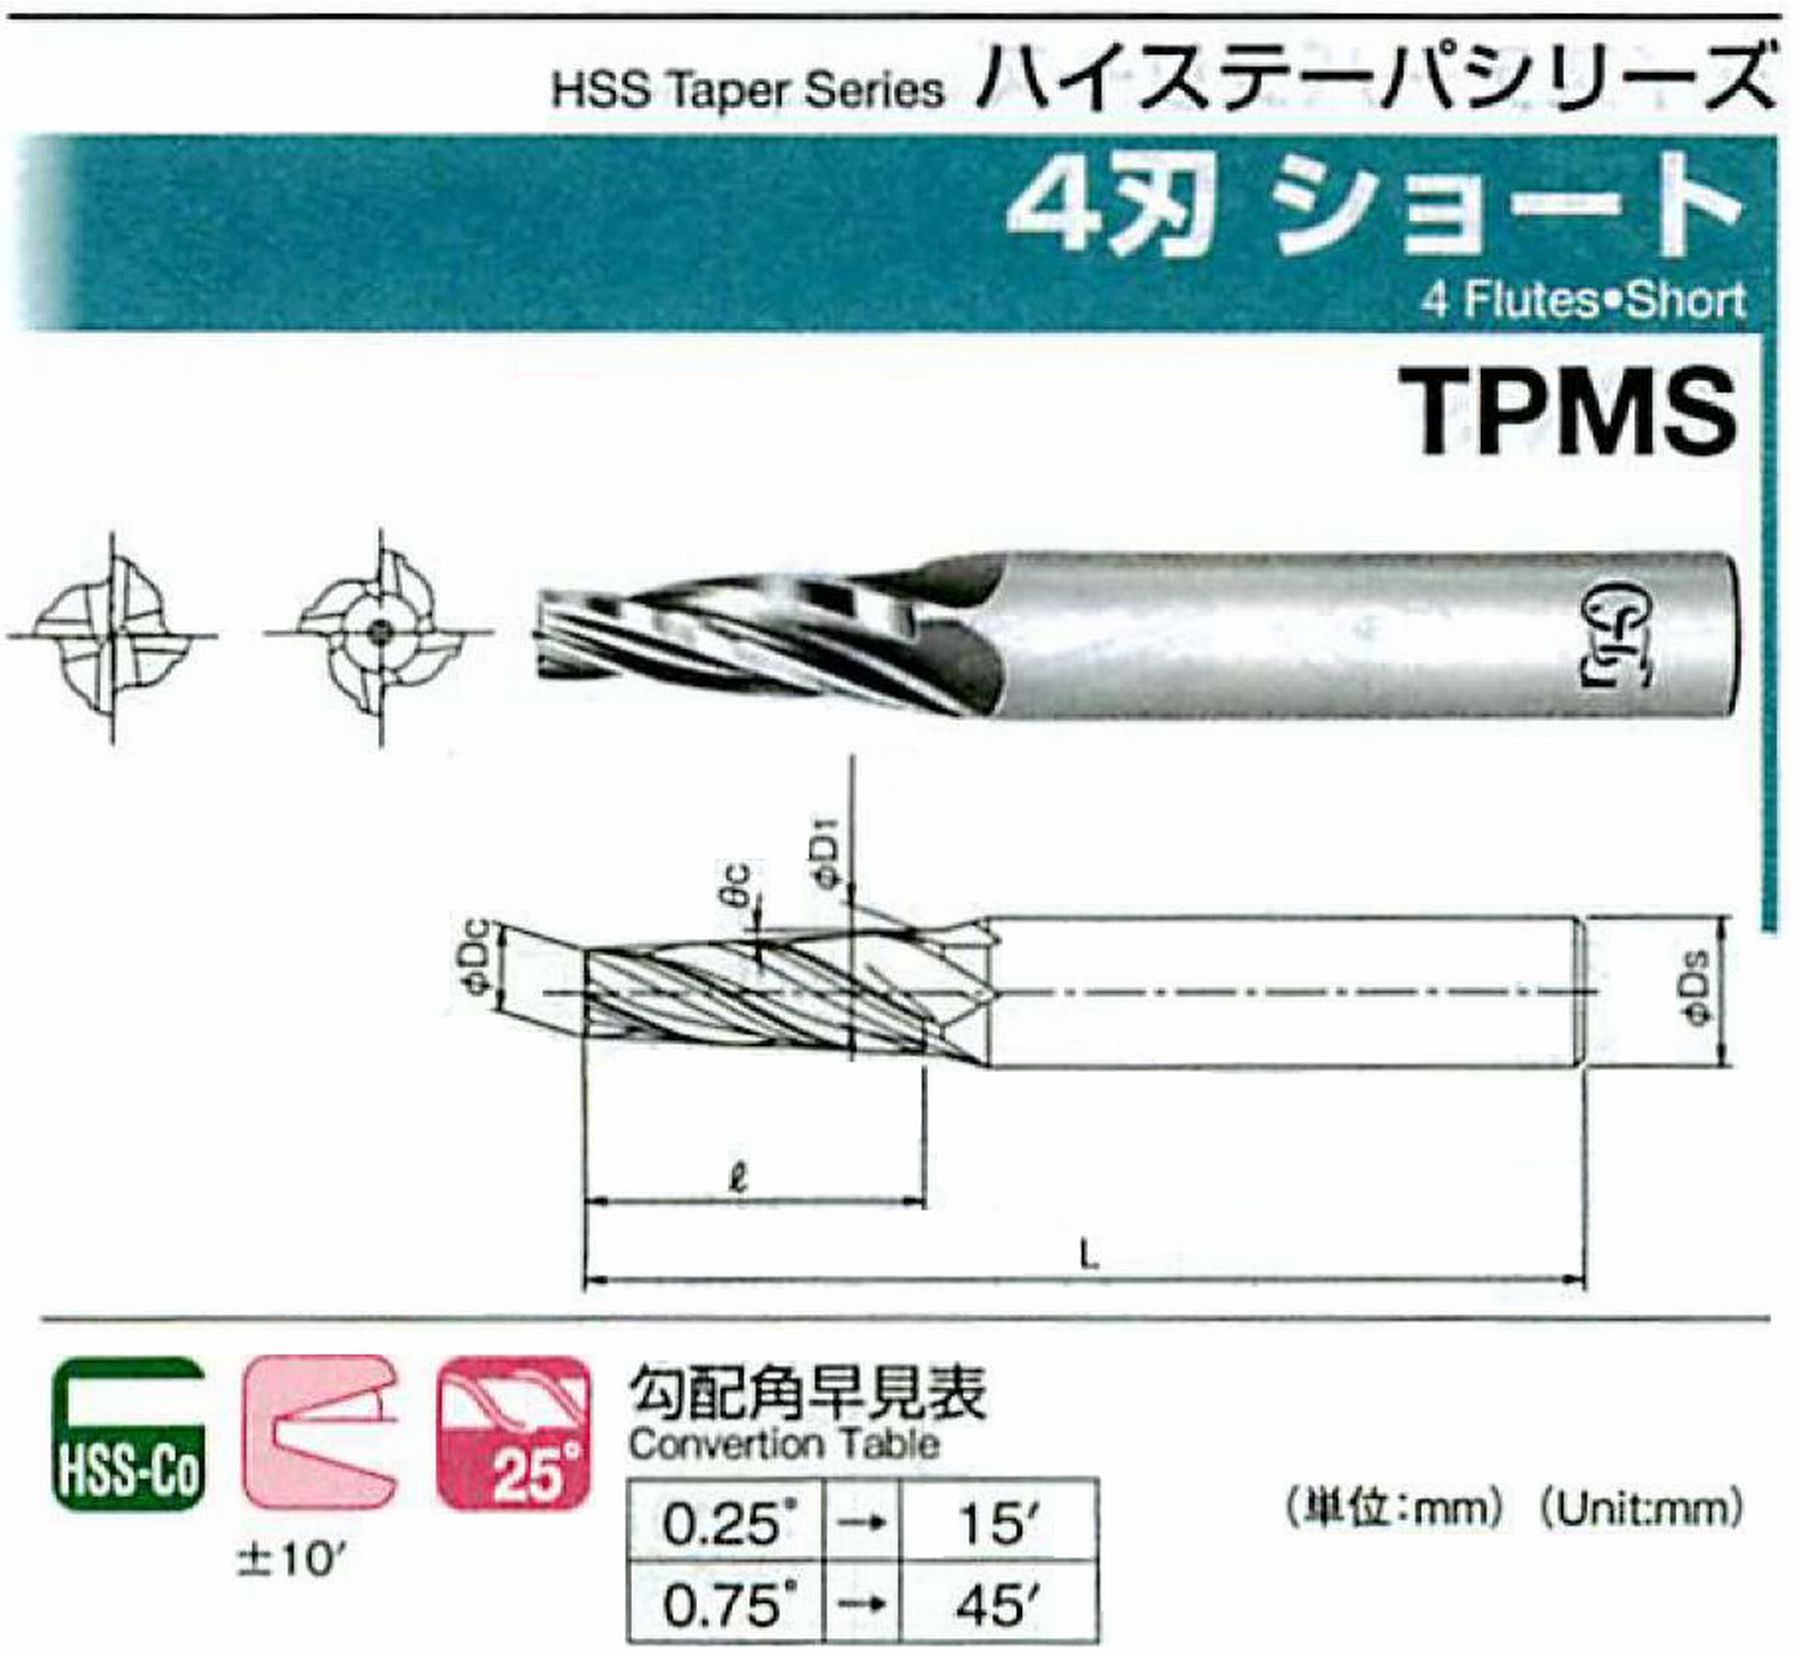 オーエスジー/OSG 4刃 ショート TPMS 外径×刃部テーパ半角3×2.5°全長62 刃長18 シャンク径6mm 大端径4.57